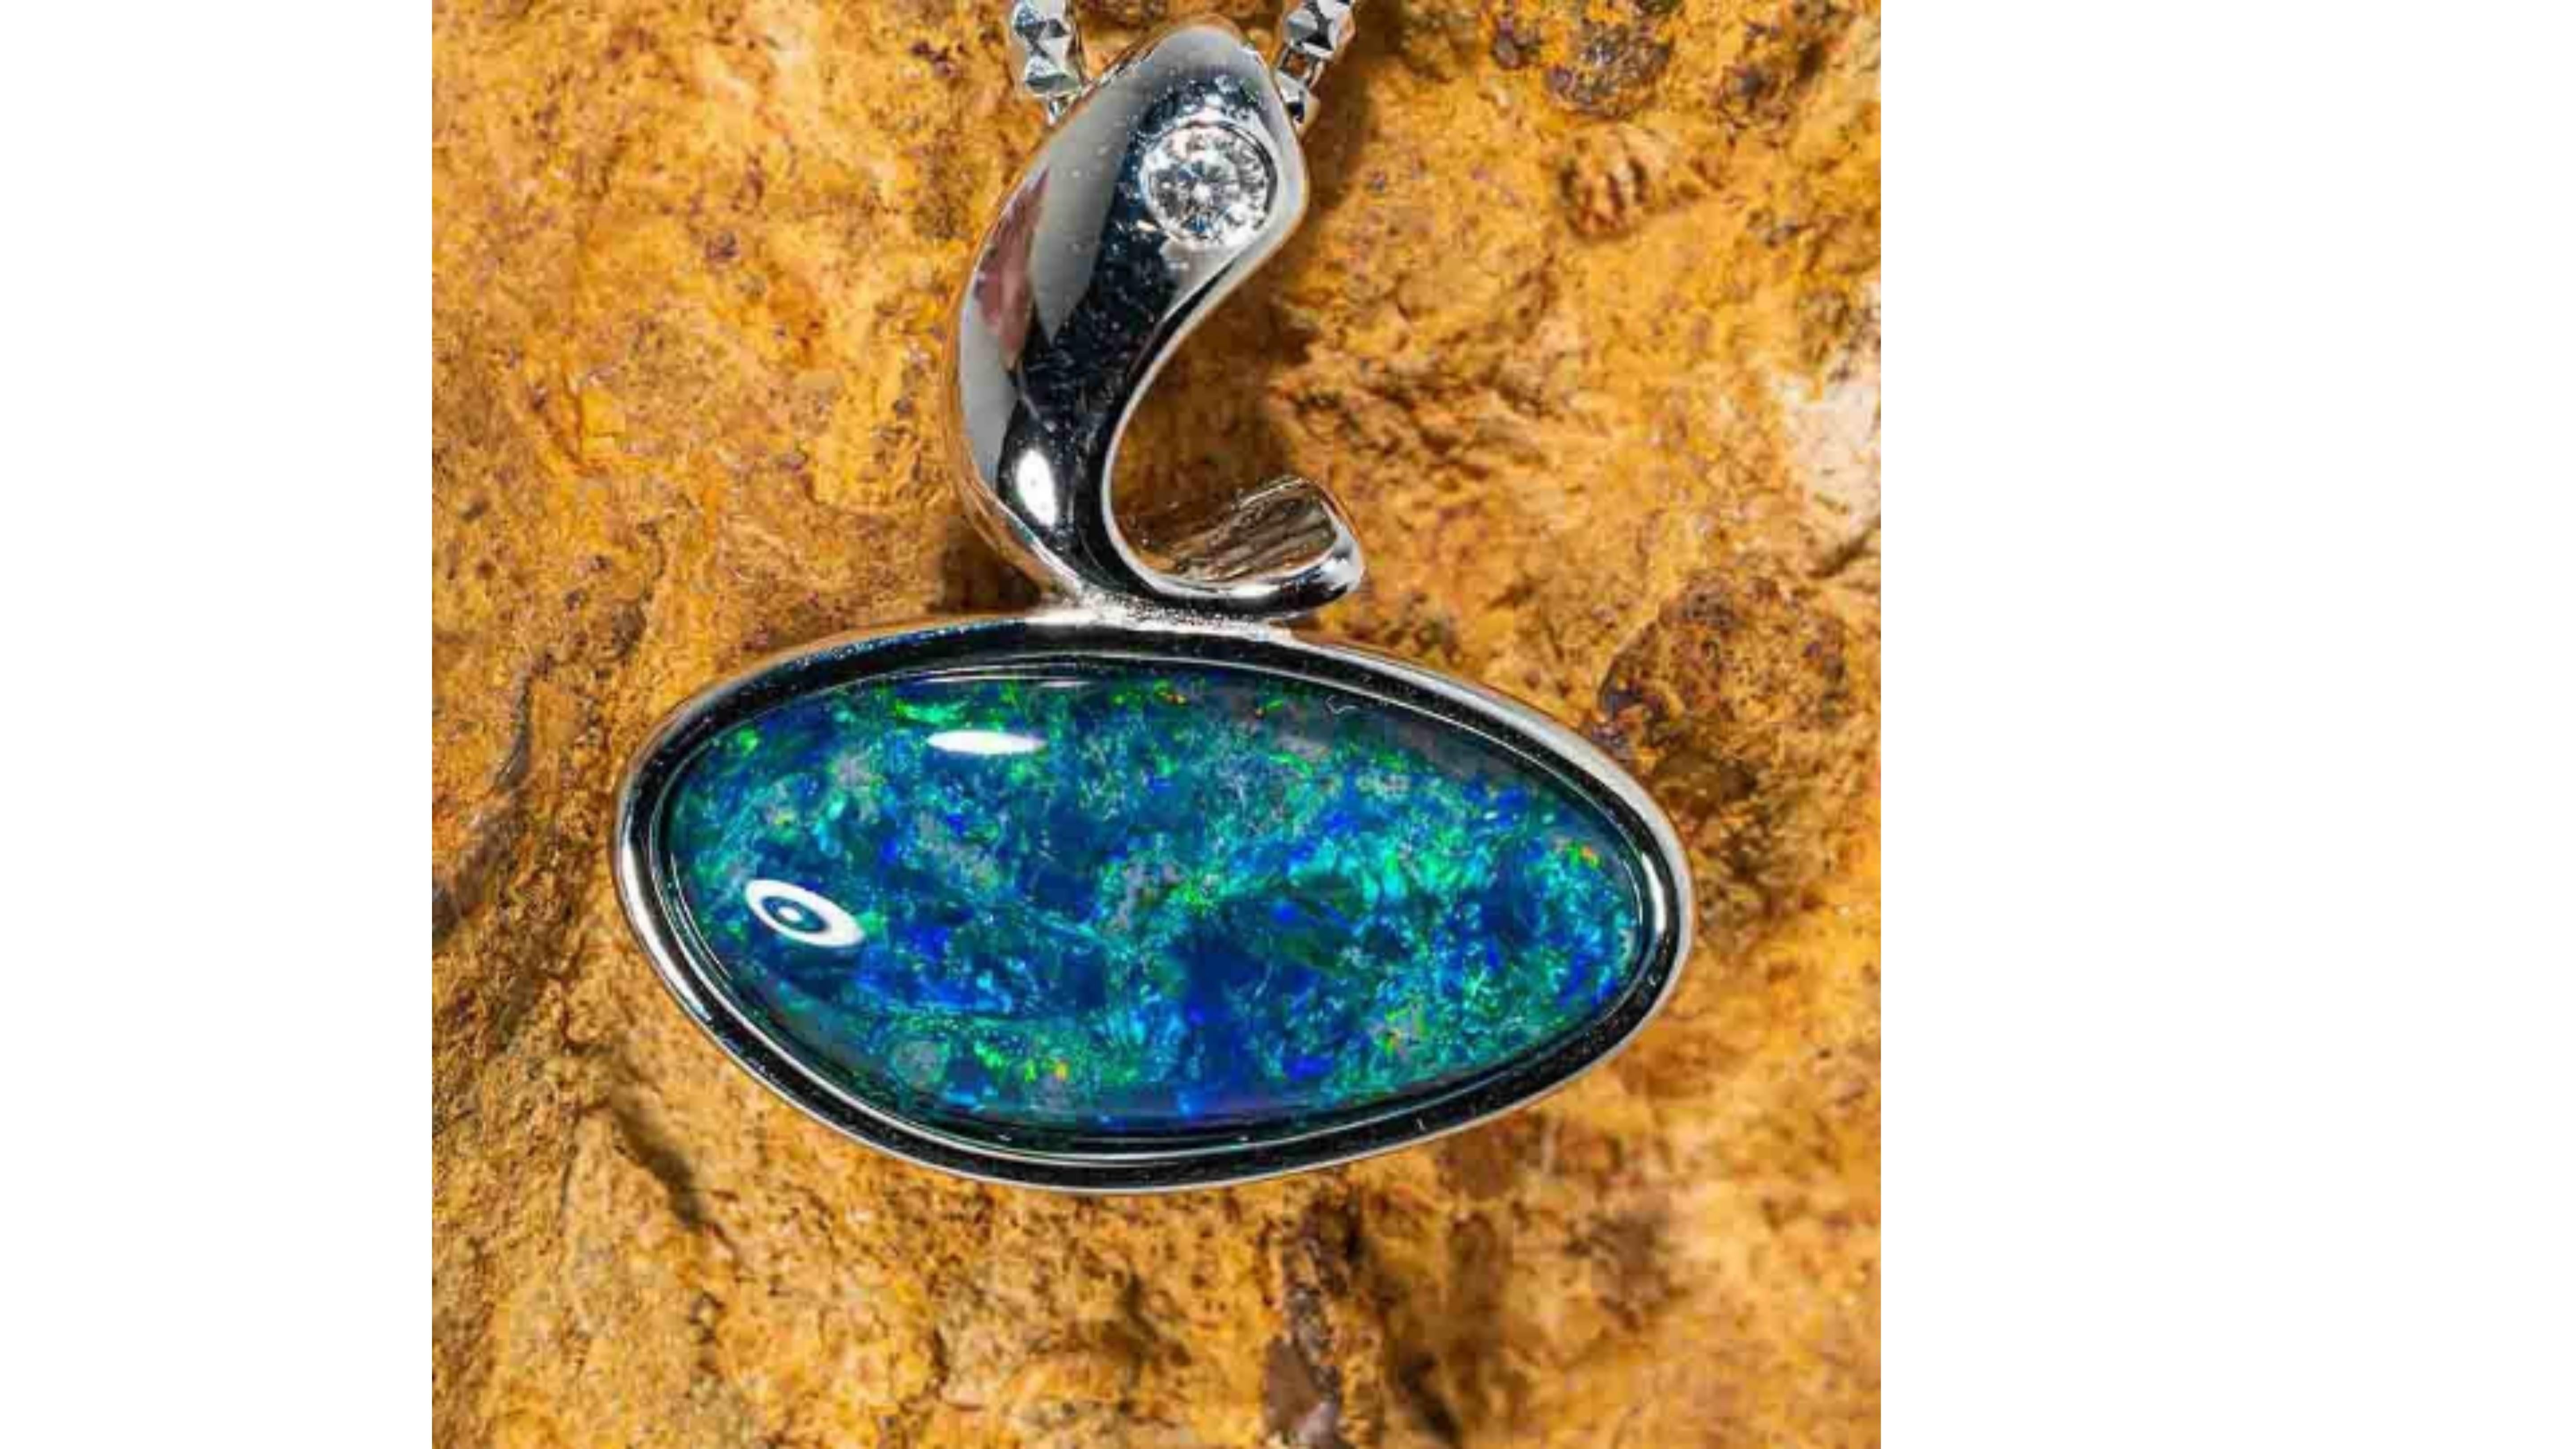 australian blue opal necklace